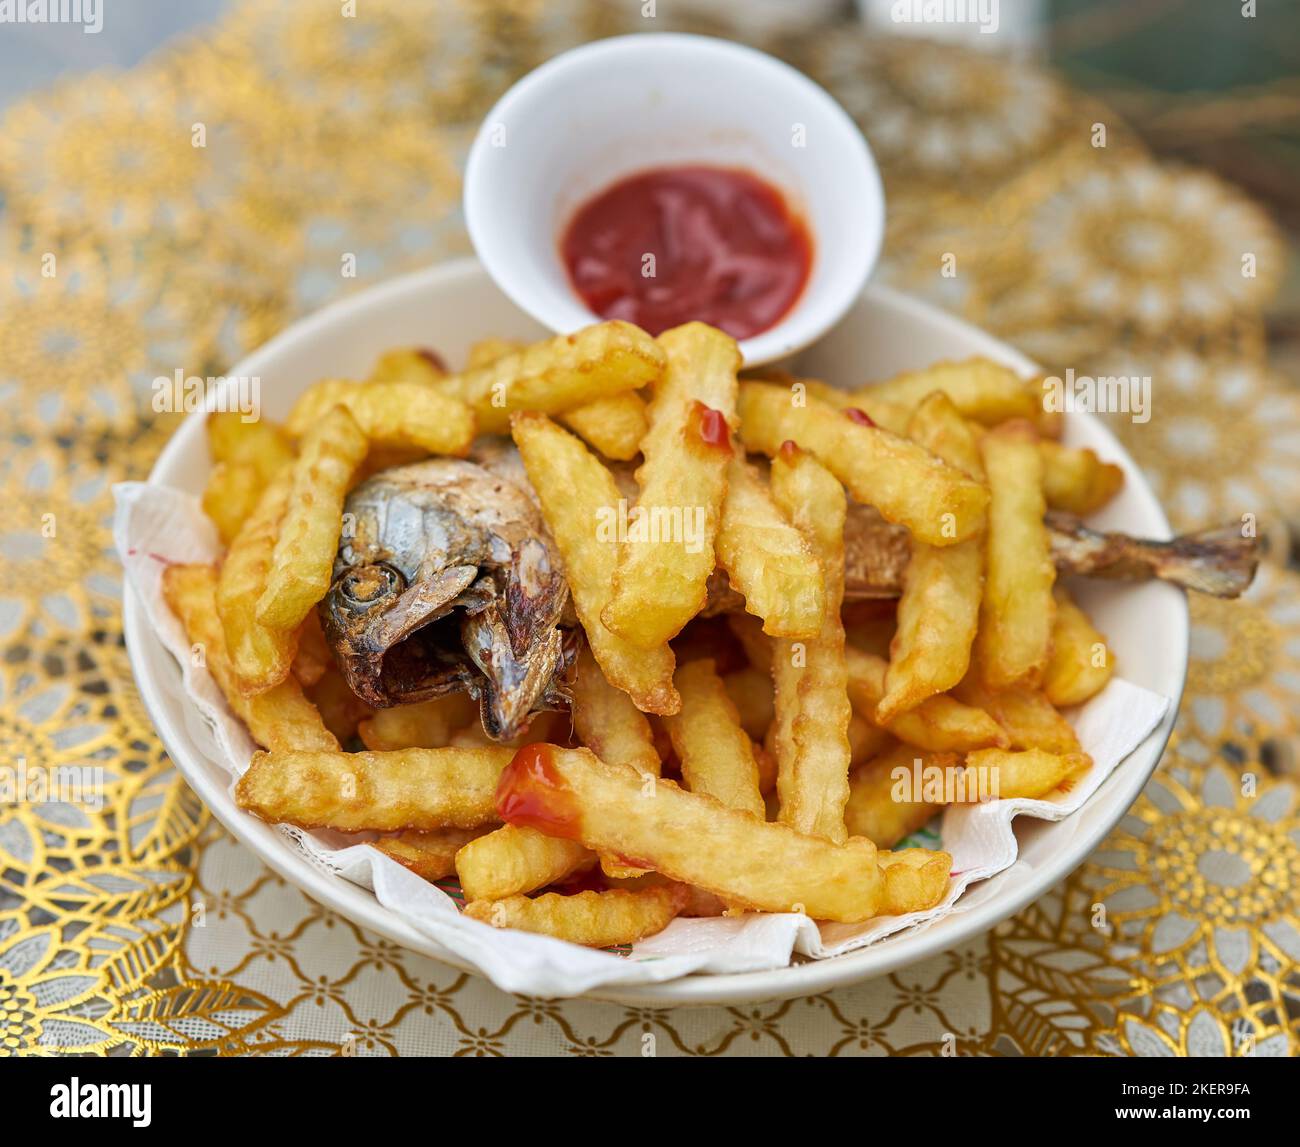 Une assiette de poisson et de croustilles avec ketchup de tomate. Banque D'Images